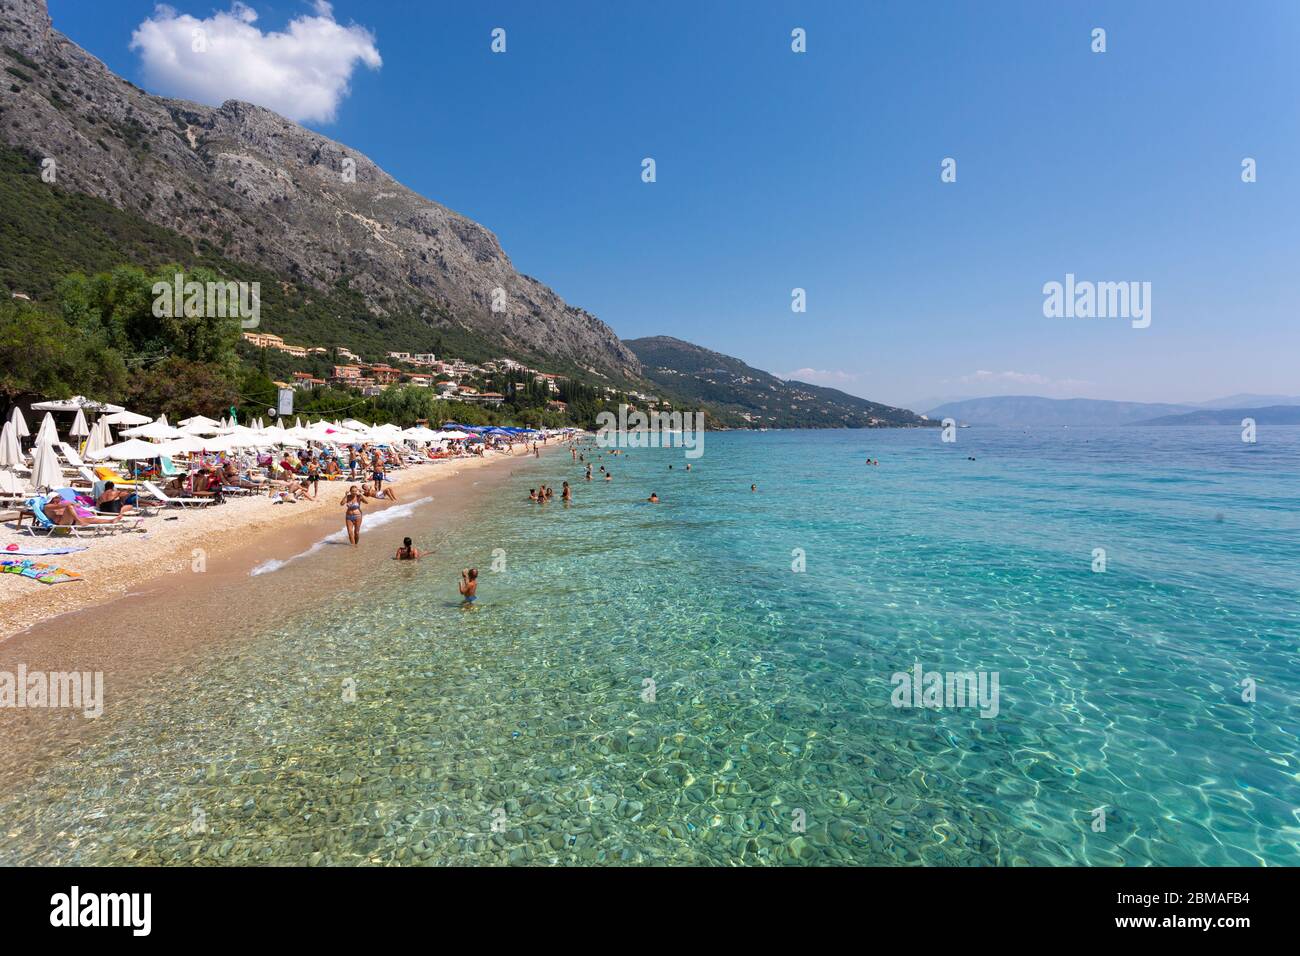 People swimming at Barbati Beach, Corfu Stock Photo